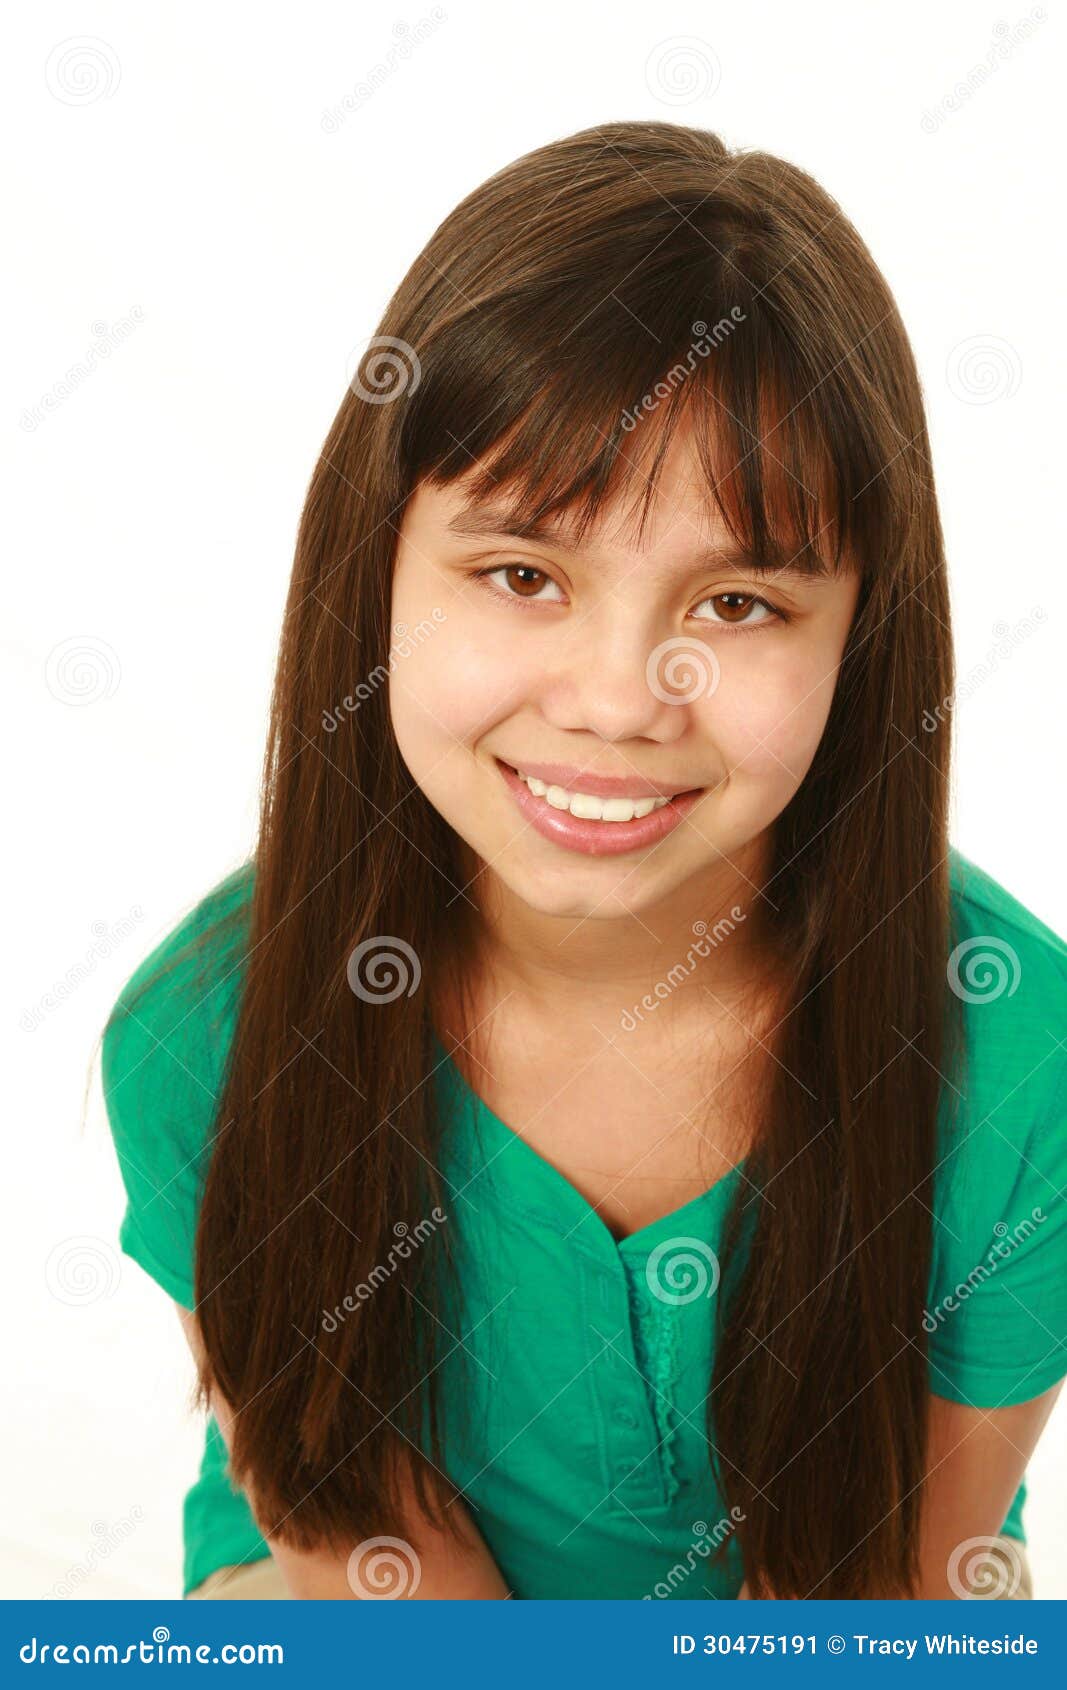 Smiling Mixed Race Girl Looking At Camera Stock Image Image Of Headshot Human 30475191